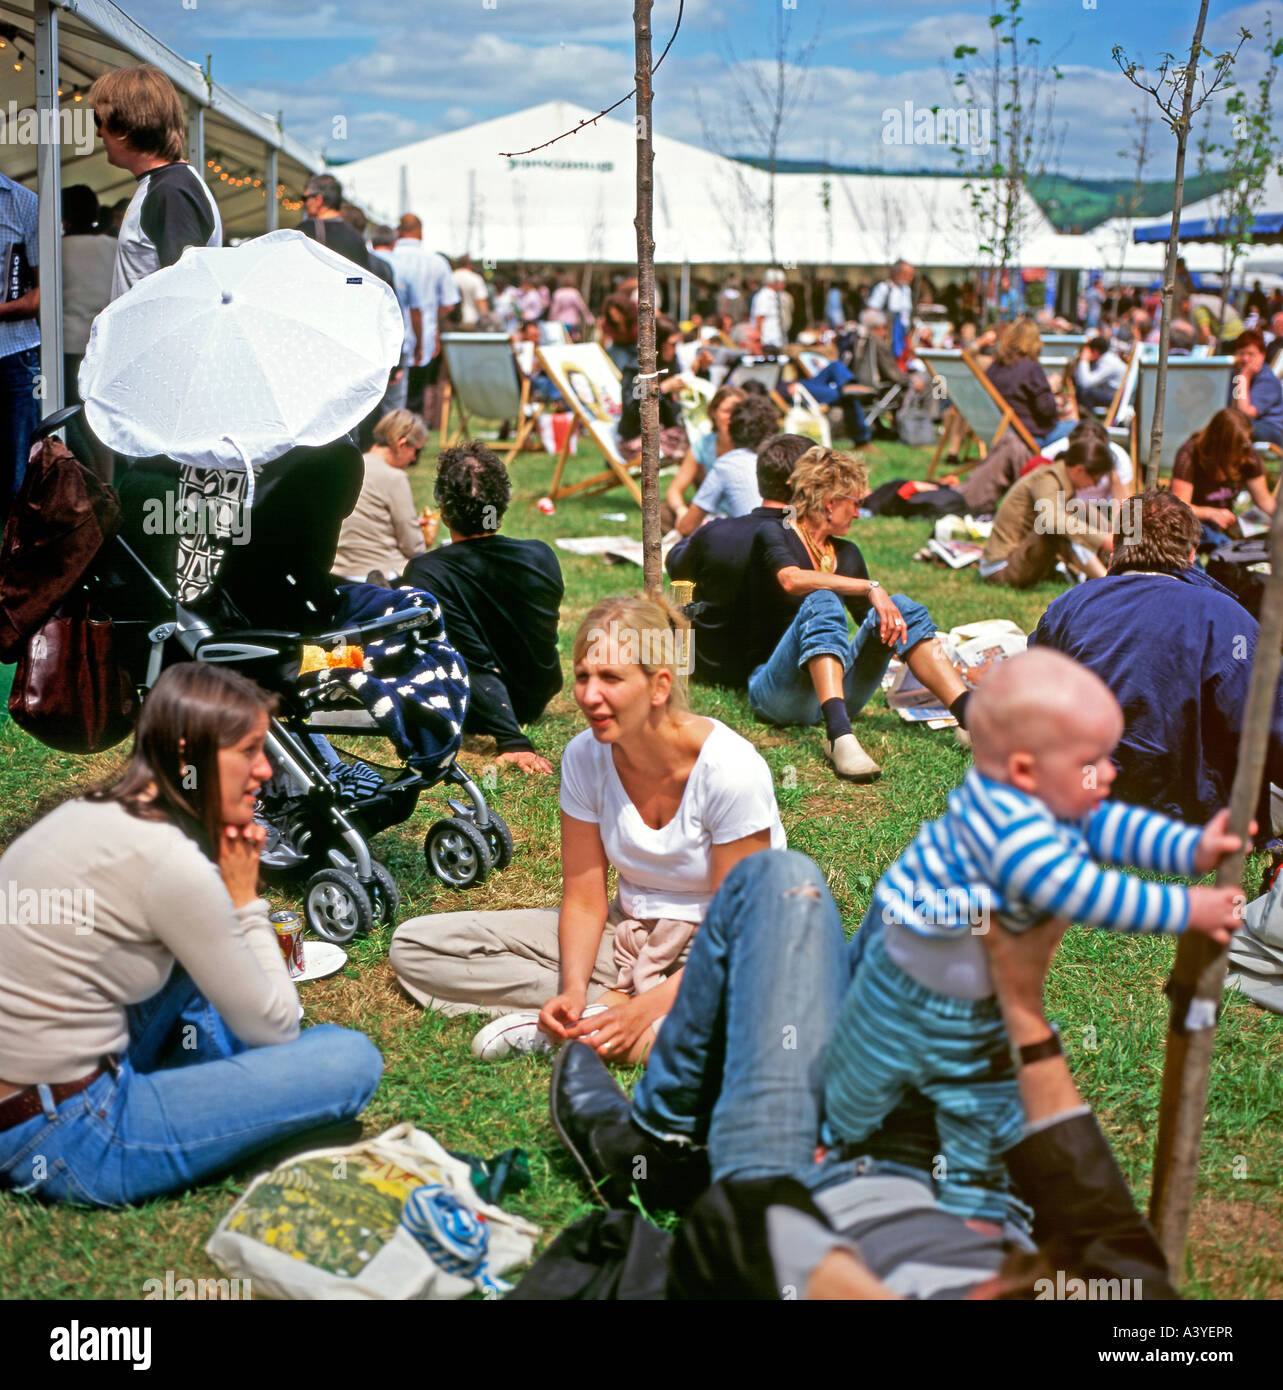 La folla di gente seduta nella luce del sole al di fuori in giardino presso il Festival di Fieno Hay-on-Wye, Wales, Regno Unito KATHY DEWITT Foto Stock